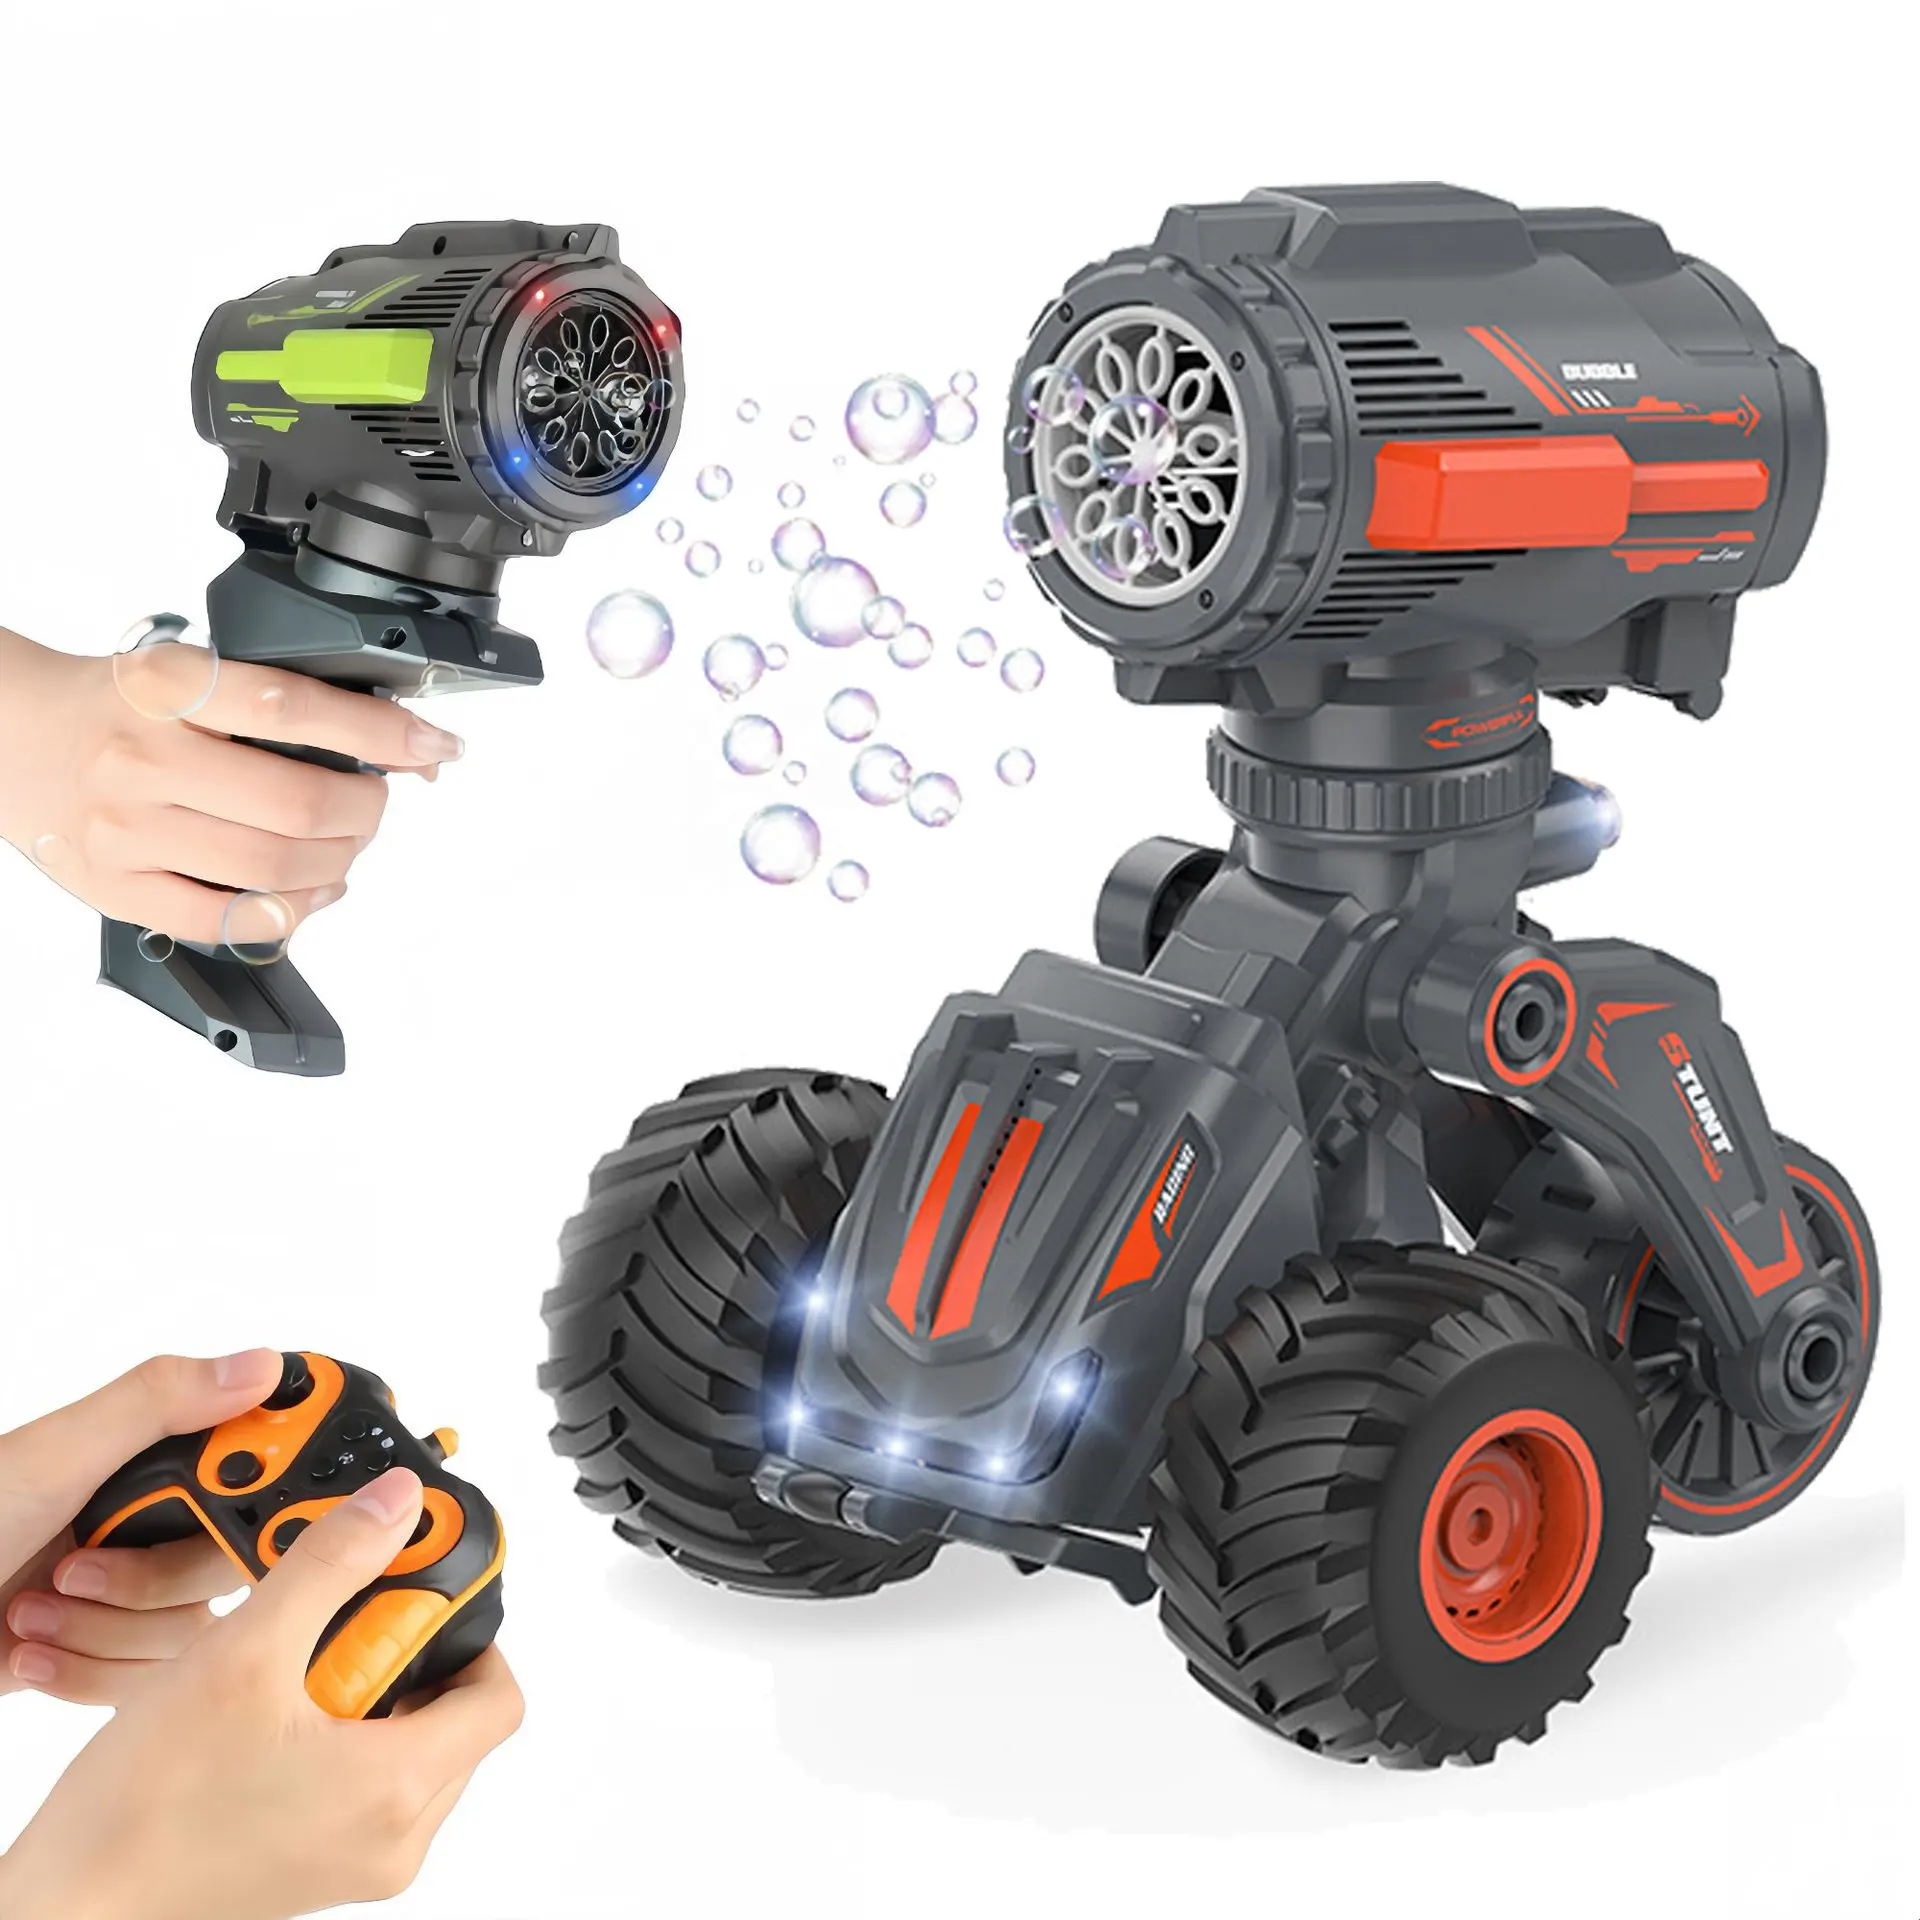 Brinquedo 2 em 1 para carros com controle remoto, soprador de bolhas, carrinho de brincar com máquina de bolhas, transformador, veículo de controle por rádio, engraçado